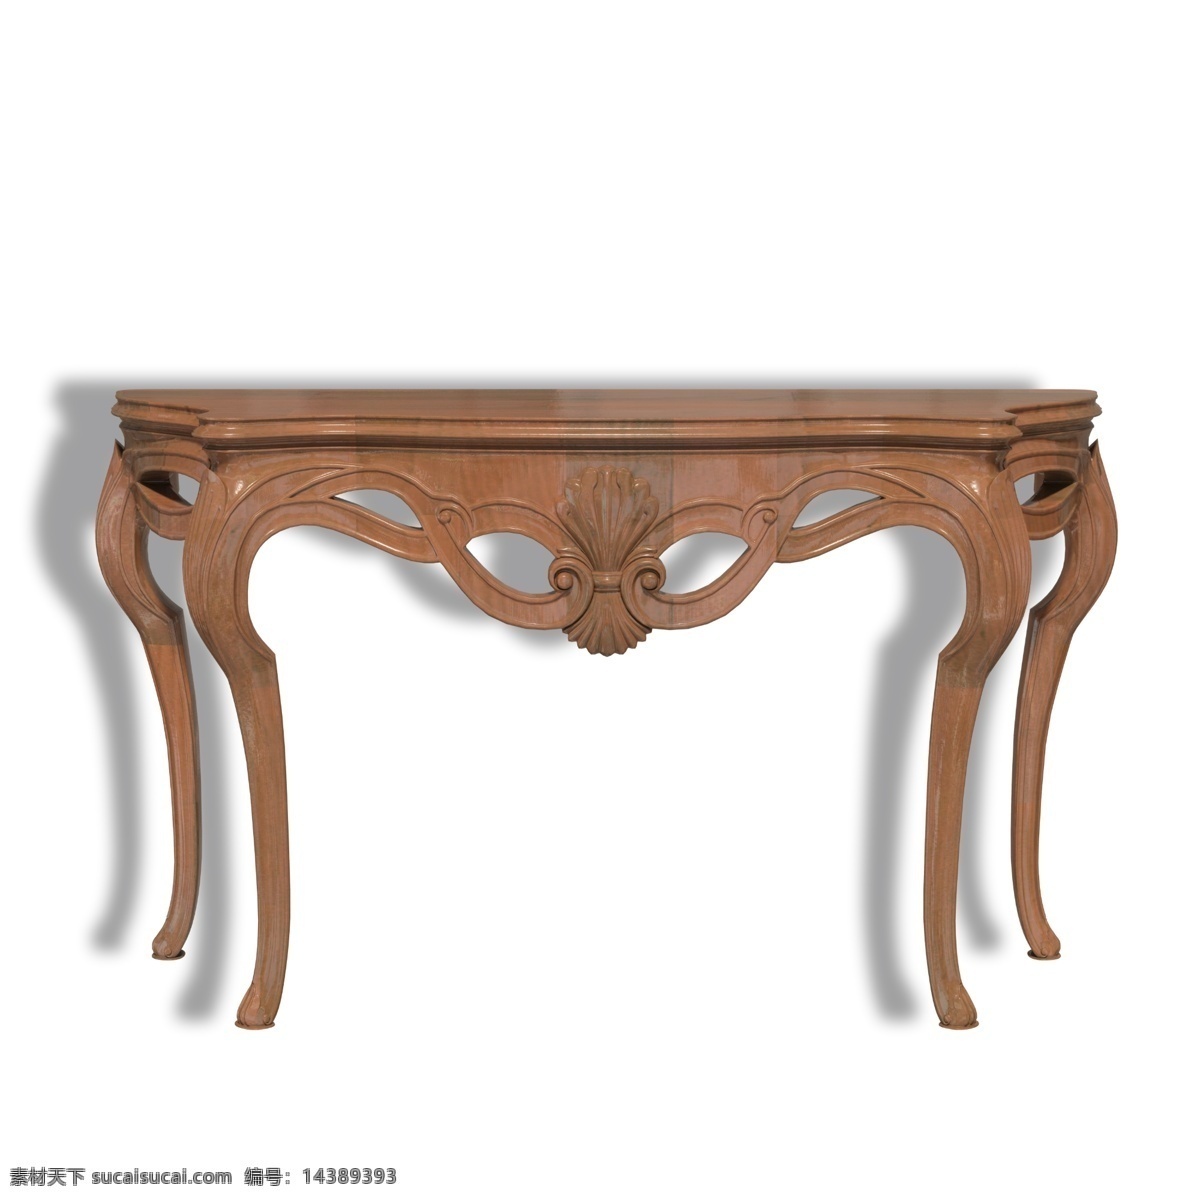 欧式 家具 实木 墙 桌 欧式家具 实木的 欧式墙桌 墙桌 实木桌子 木制桌子 欧式桌 餐桌 小桌子 实用家具